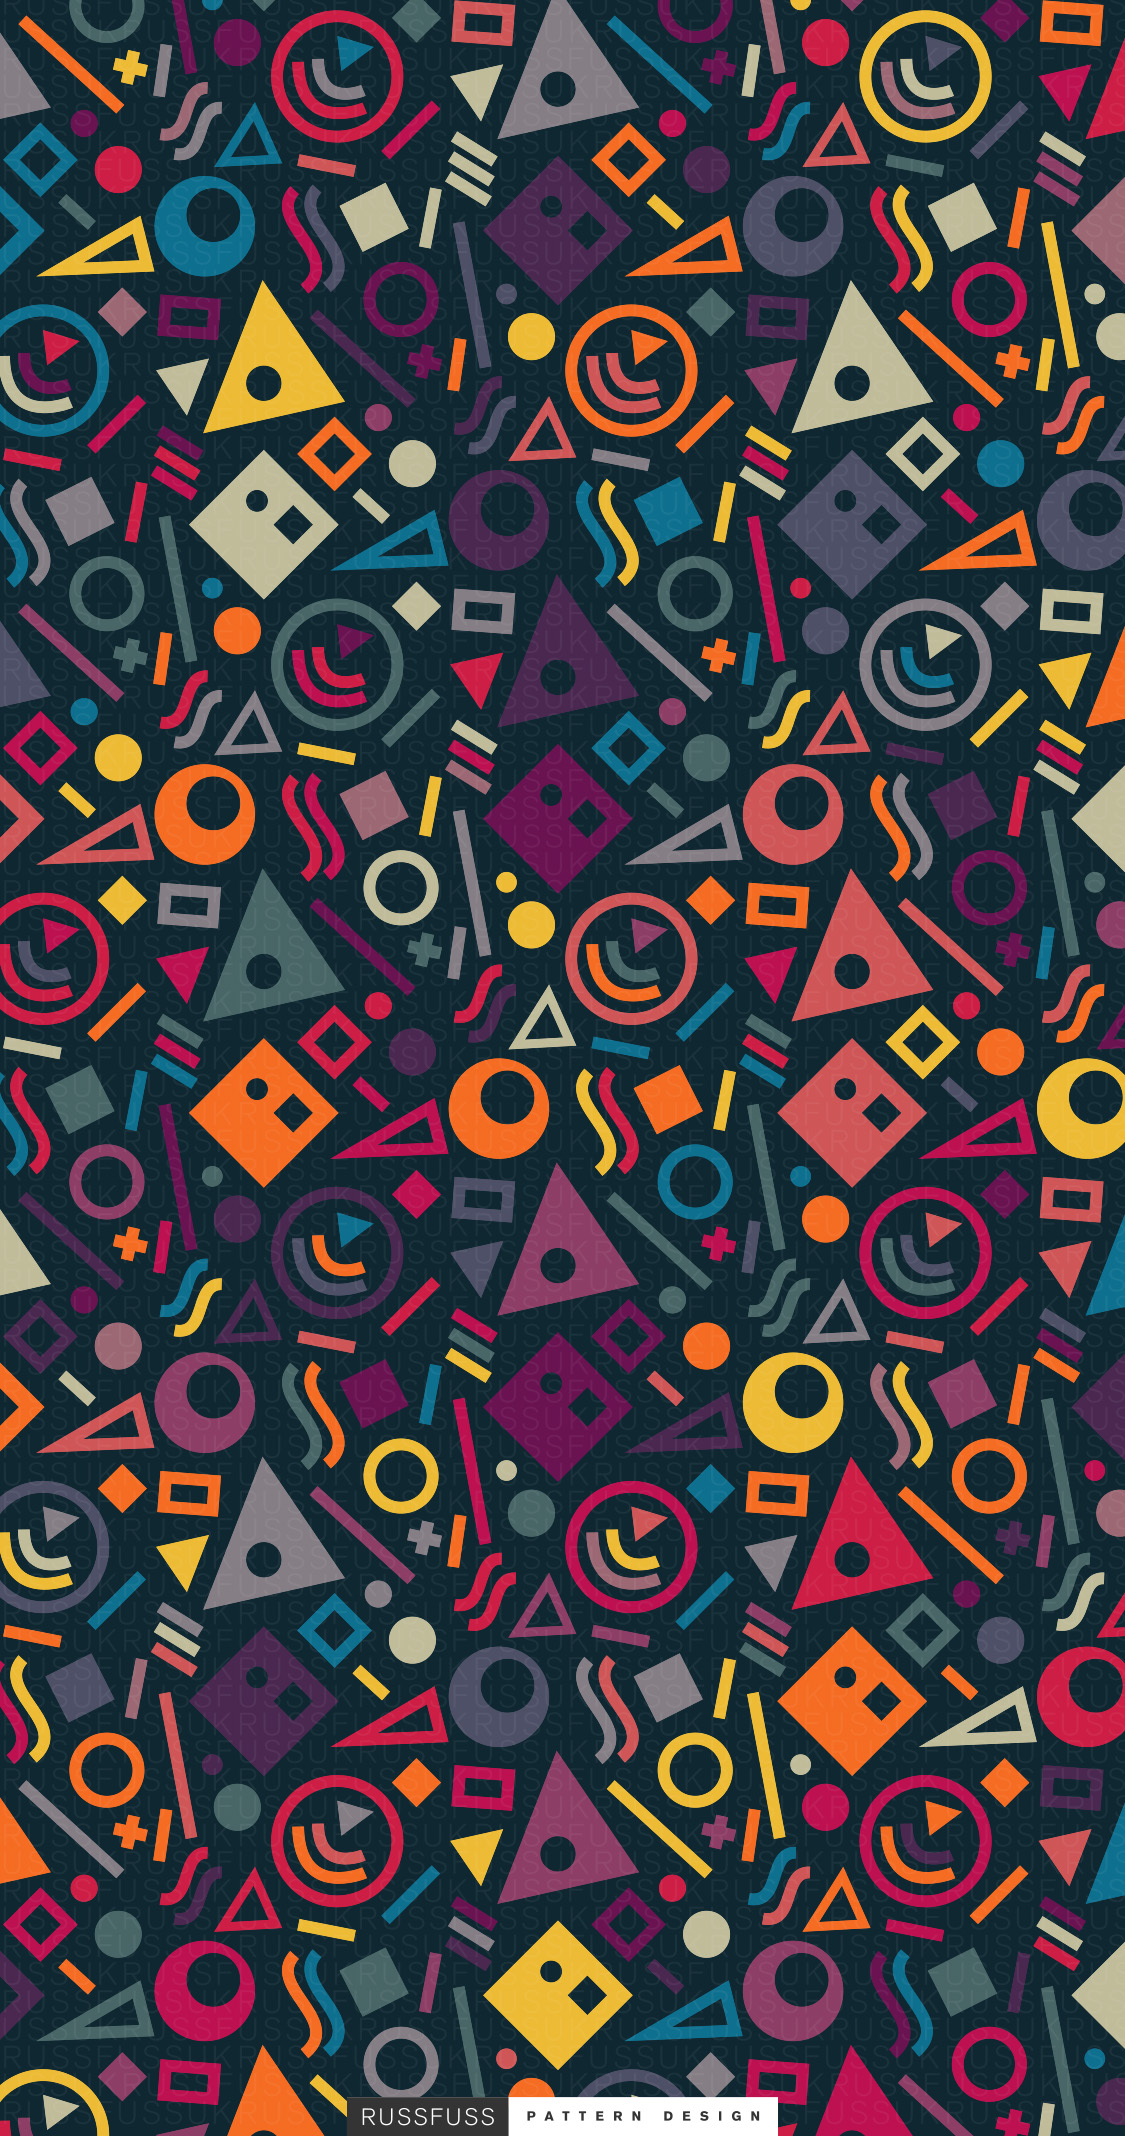 Phone Wallpaper. Russfuss Pattern Design